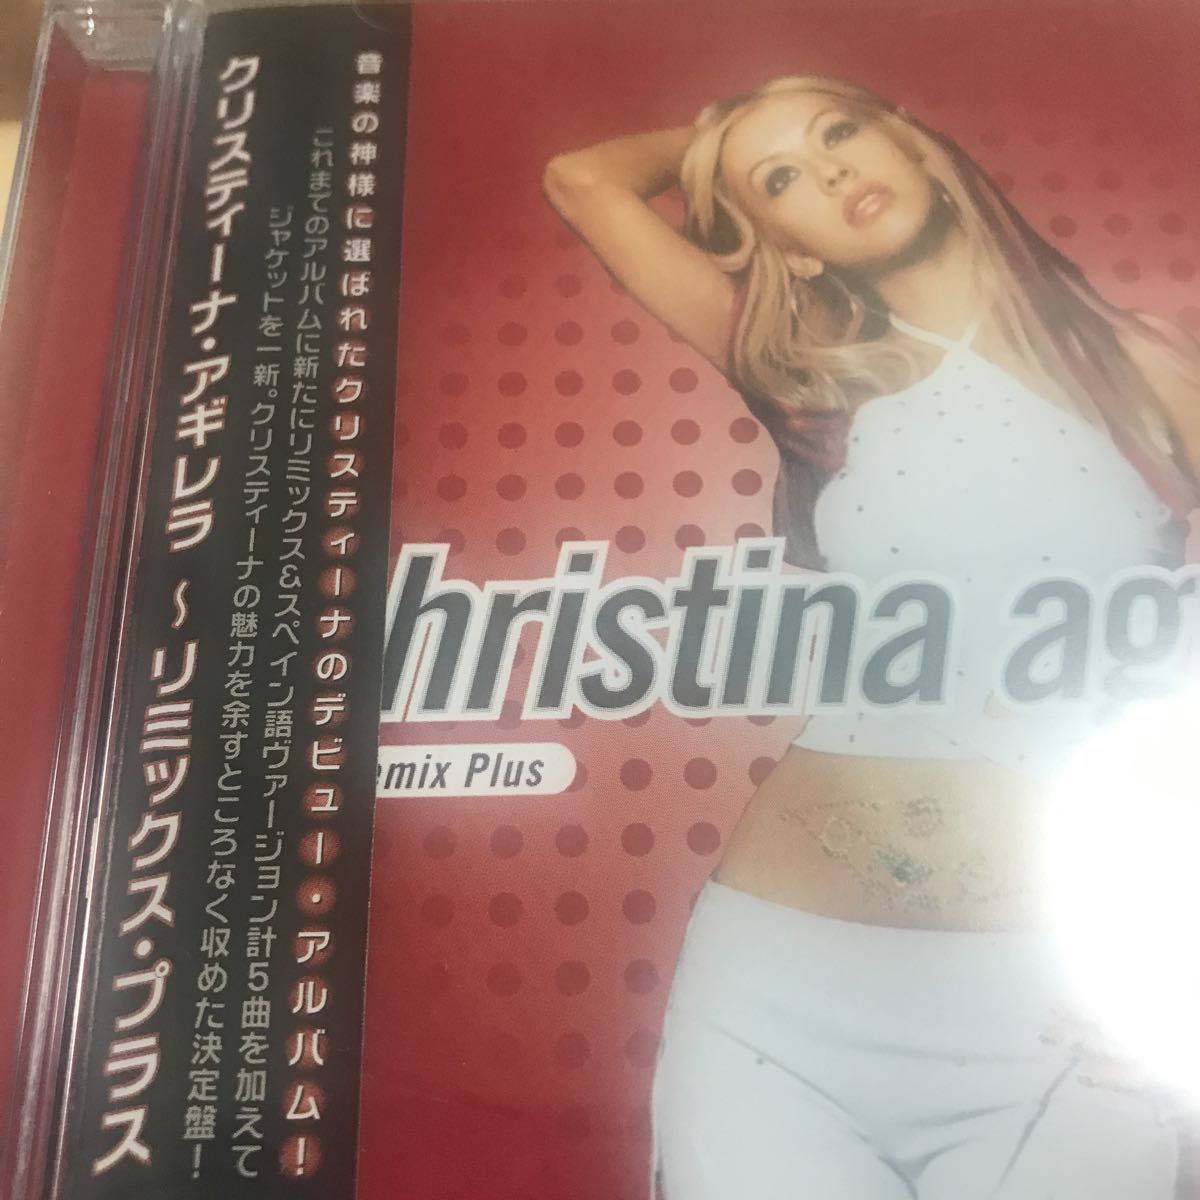  Christie na*agirela[ debut альбом + remix плюс ] очень красивый товар CDHYR[ прослушивание частота -1 раз ] стоимость доставки модифицировано .